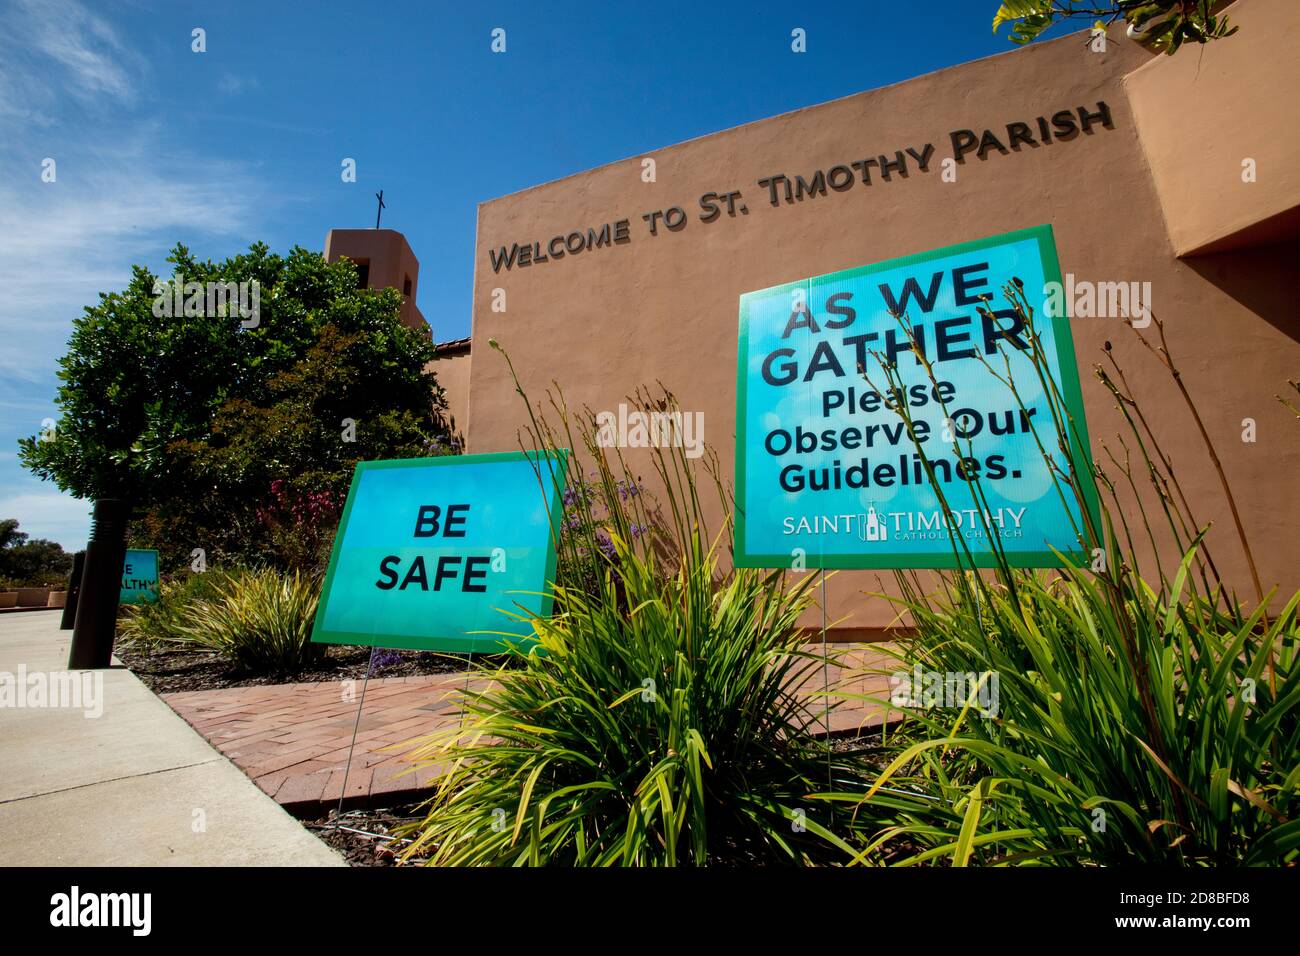 Las señales en una iglesia católica del sur de California dan la bienvenida a los feligreses que llegan mientras les advierten que observen las medidas de seguridad durante el coronavirus pand Foto de stock